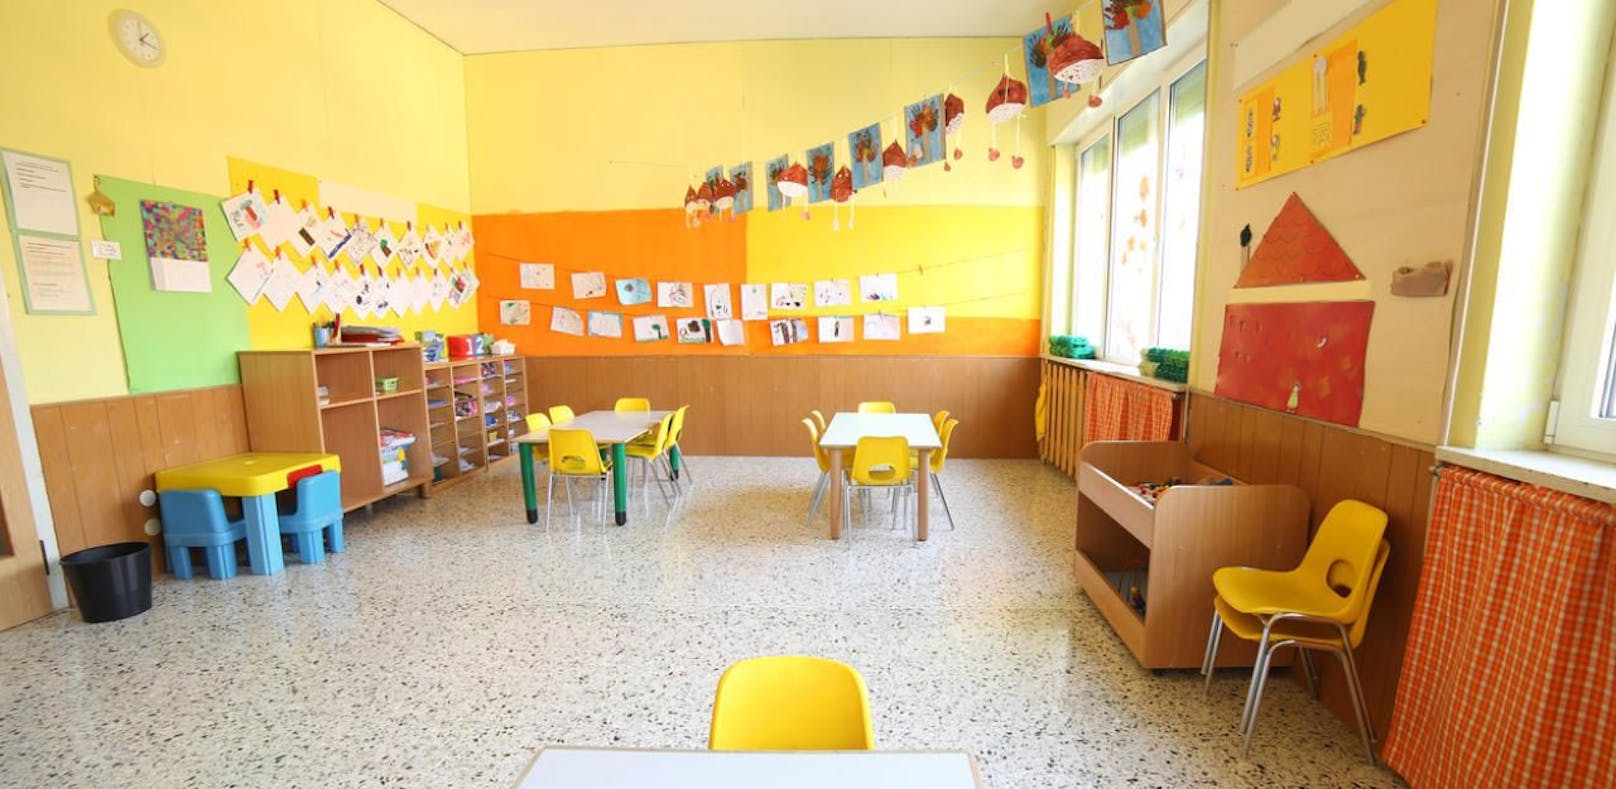 Kids im Kindergarten auf Hochstuhl festgeschnallt